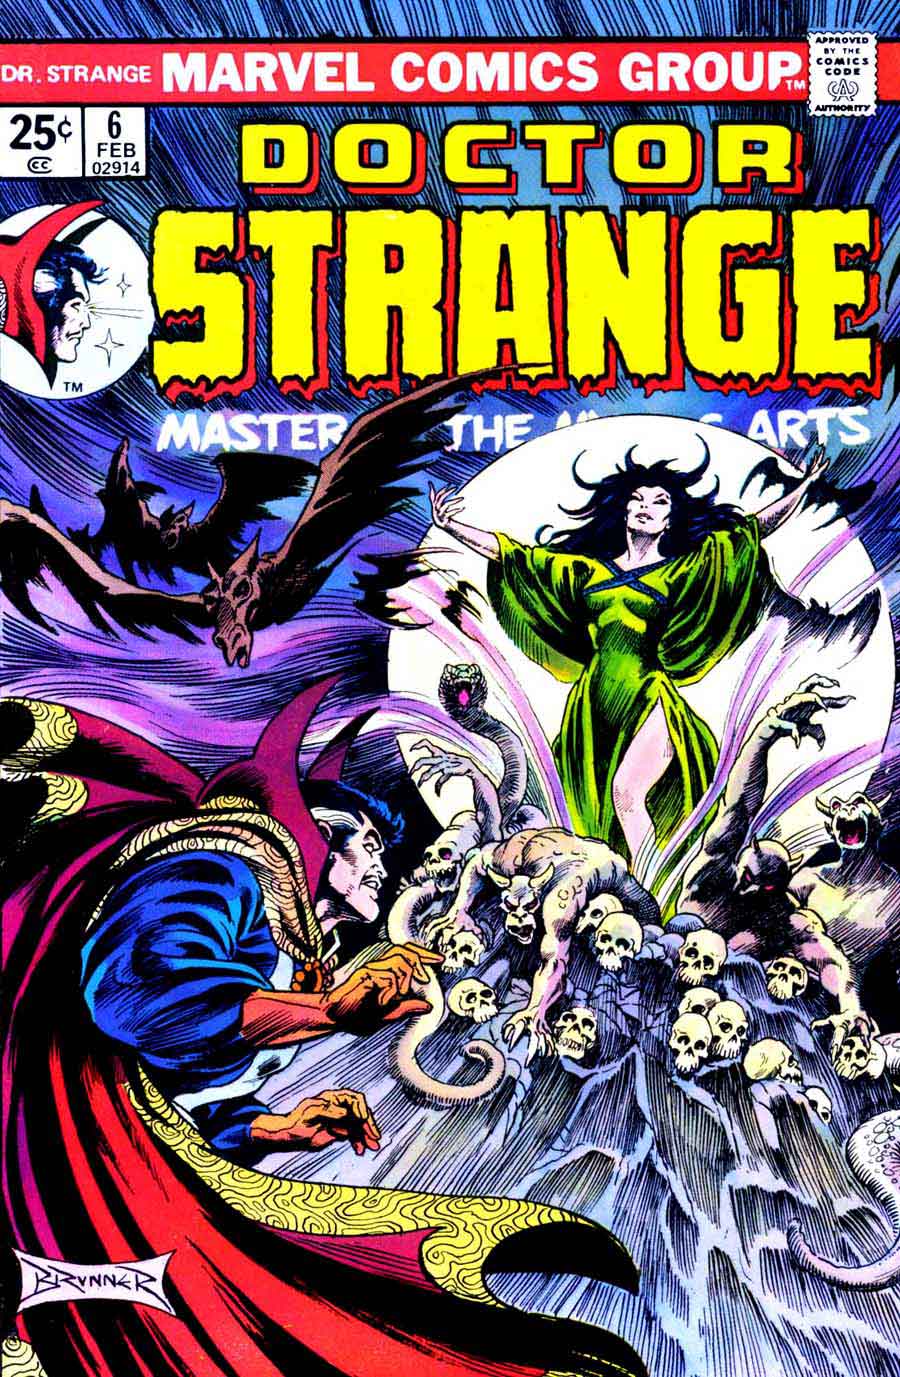 Frank Brunner  bronze age 1970s marvel comic book cover art - Doctor Strange v2 #6